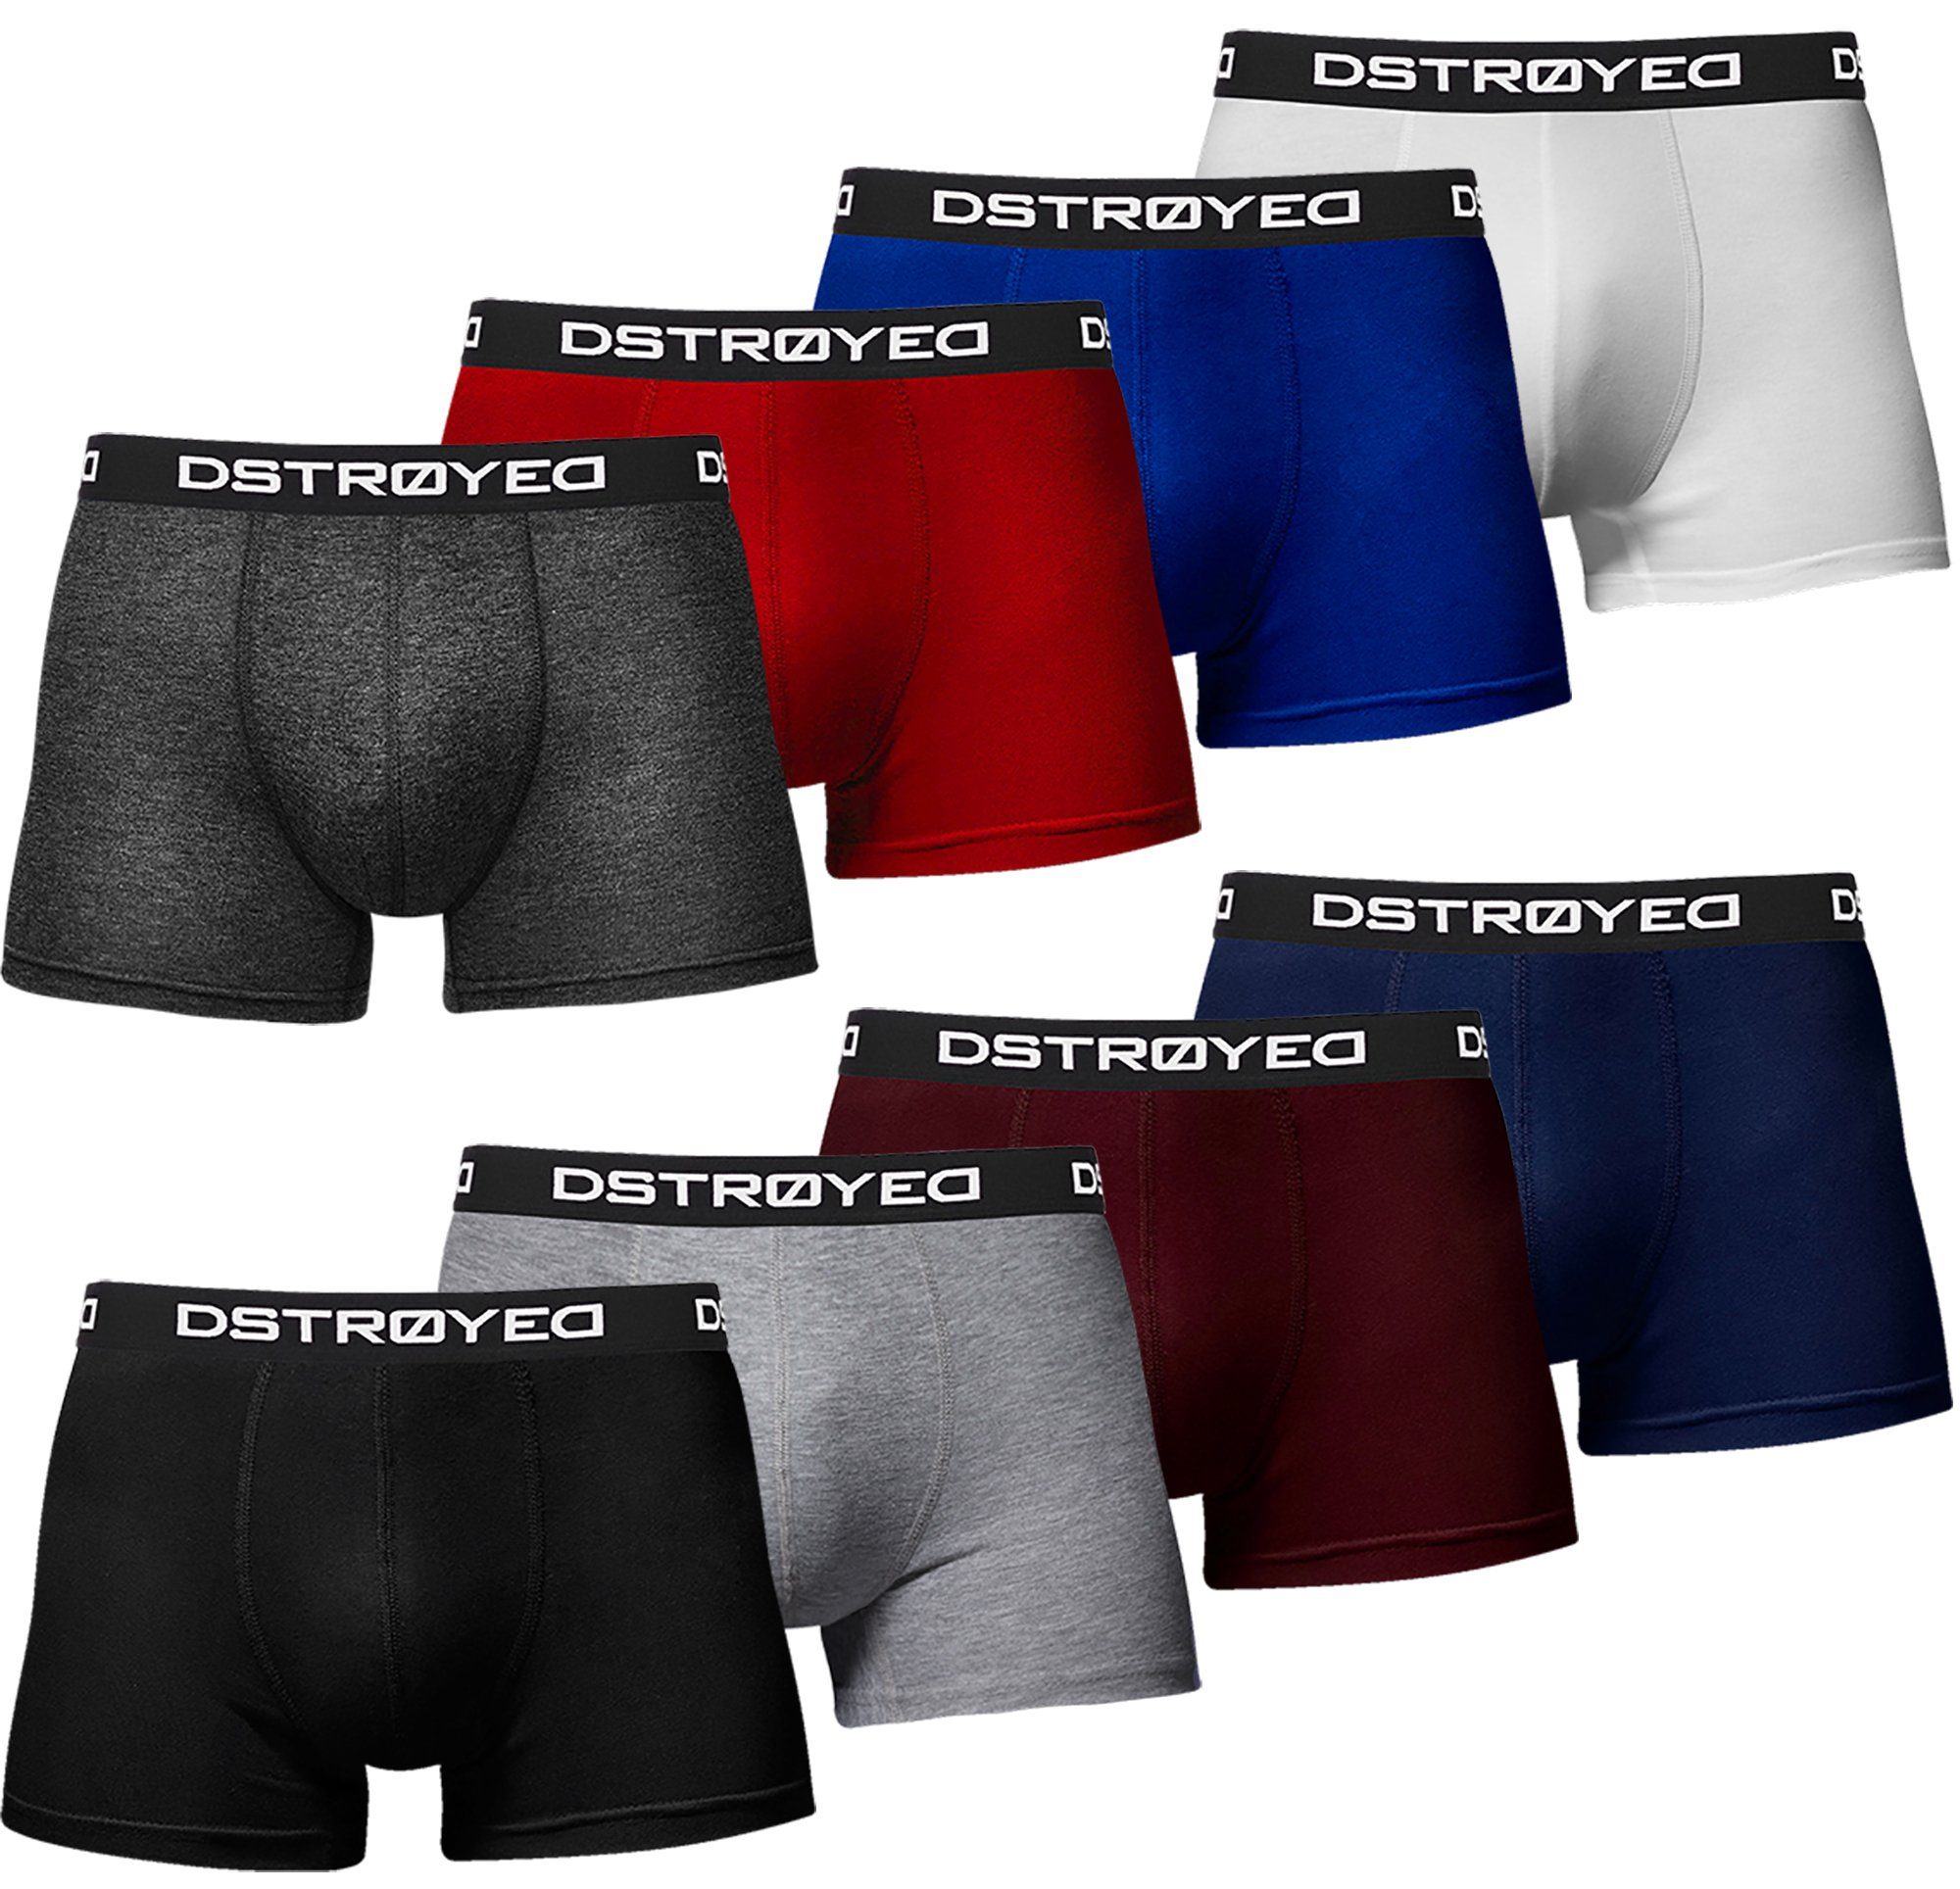 8er 8er, Unterhosen Baumwolle Boxershorts Herren Premium (Vorteilspack, Pack) perfekte Qualität 316d-mehrfarbig DSTROYED Passform Männer